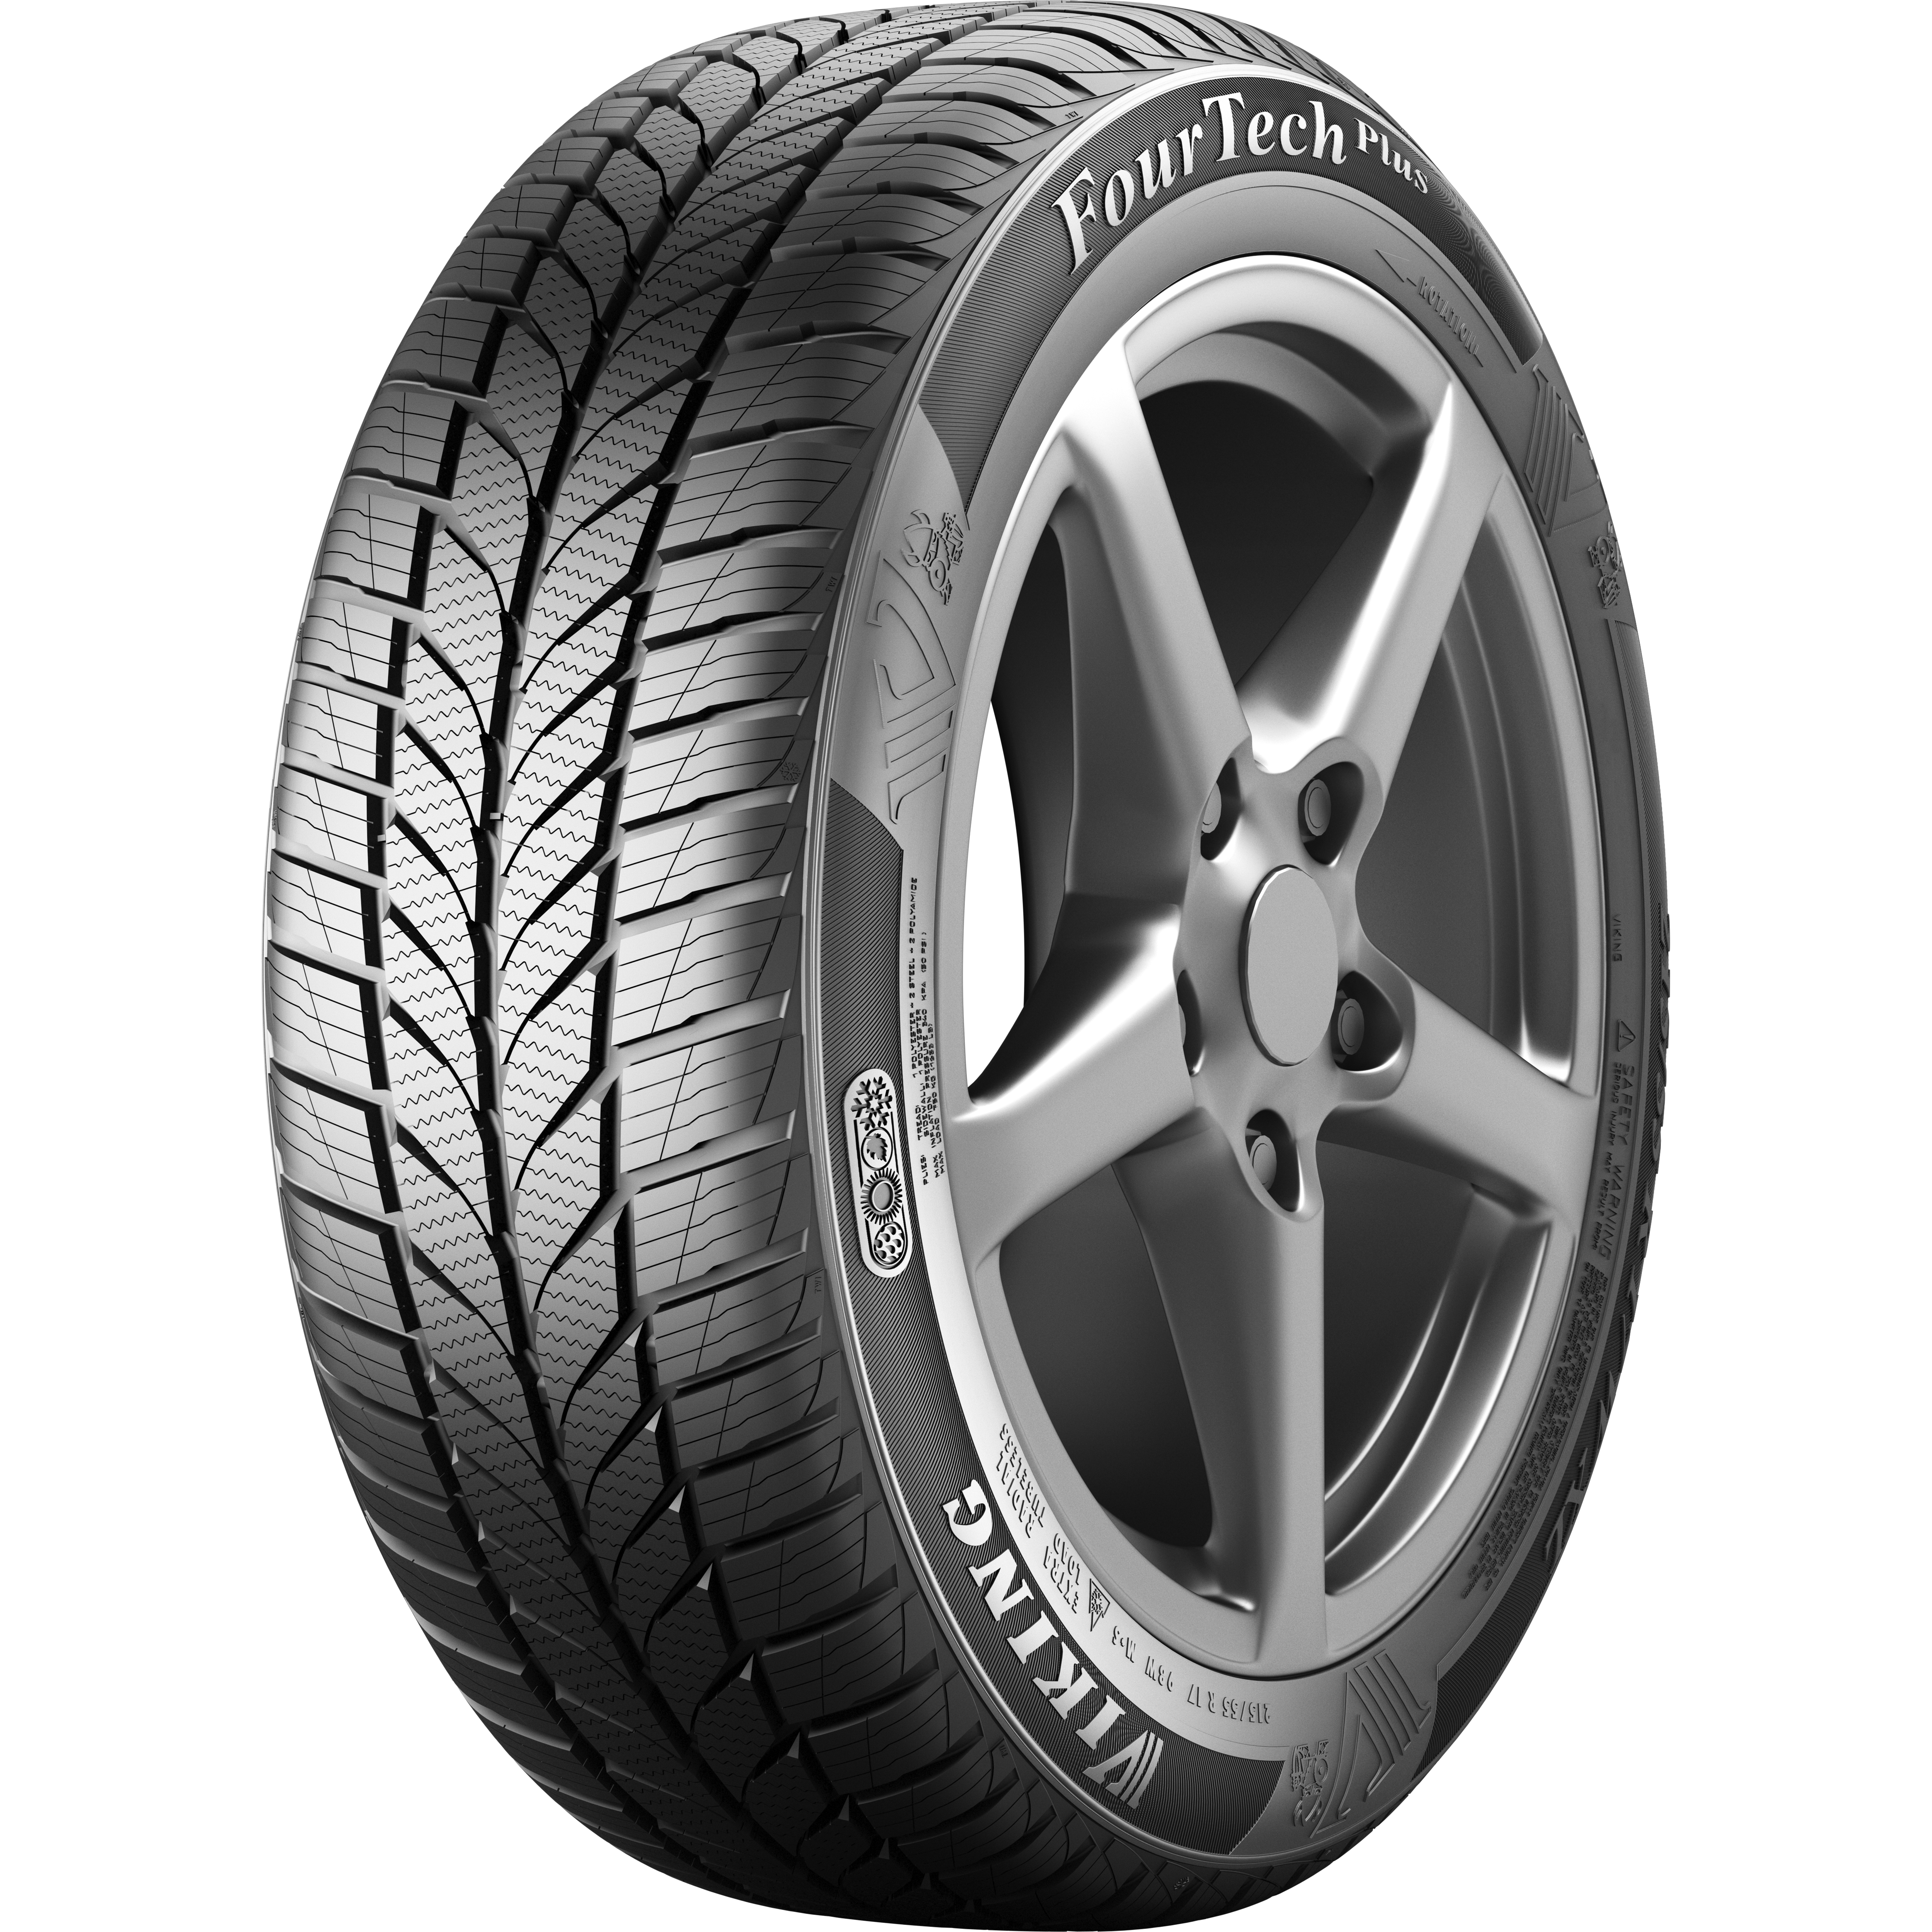 Viking FourTech Plus allseason tyre